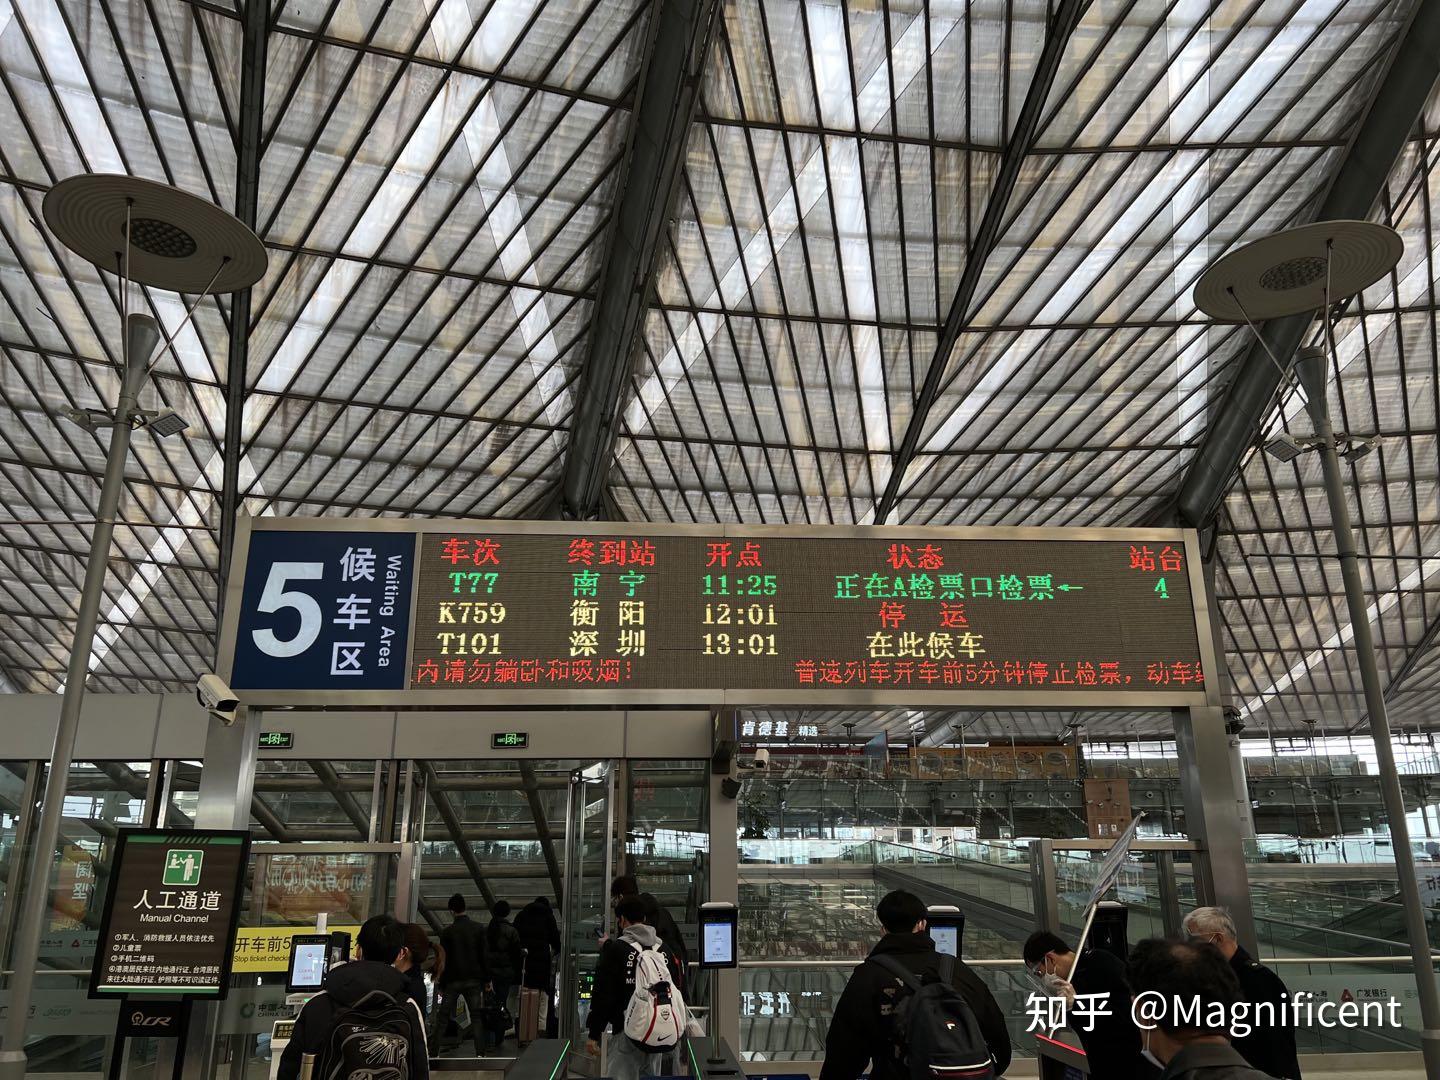 T77次列車:基本信息,途經到站,_中文百科全書